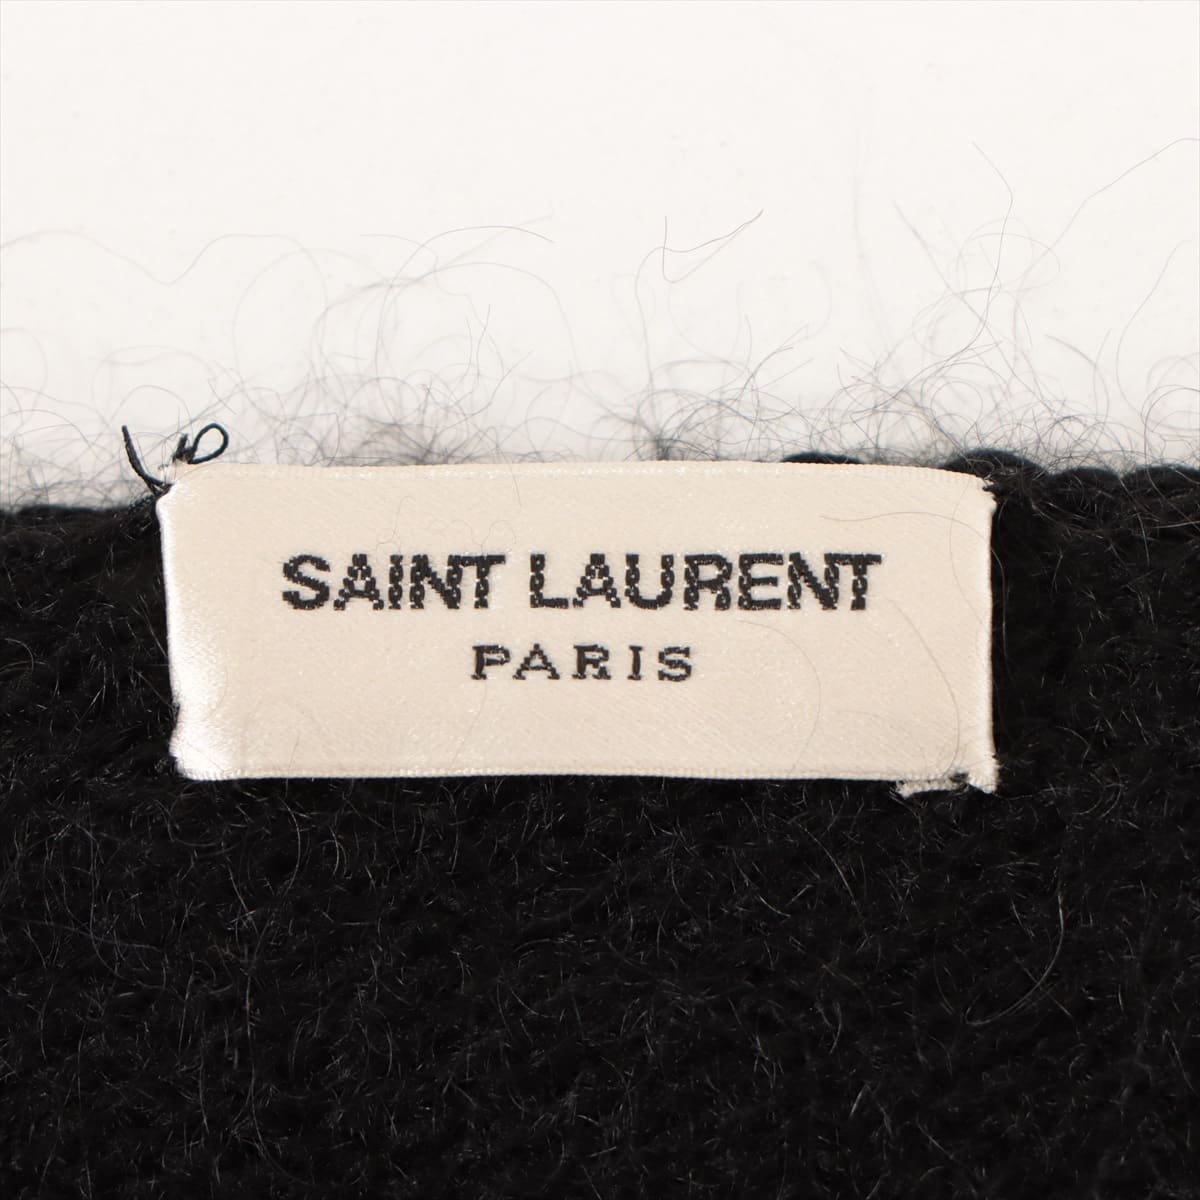 Saint Laurent Paris 17 years Wool & mohair Knit XS Men's Black  480142